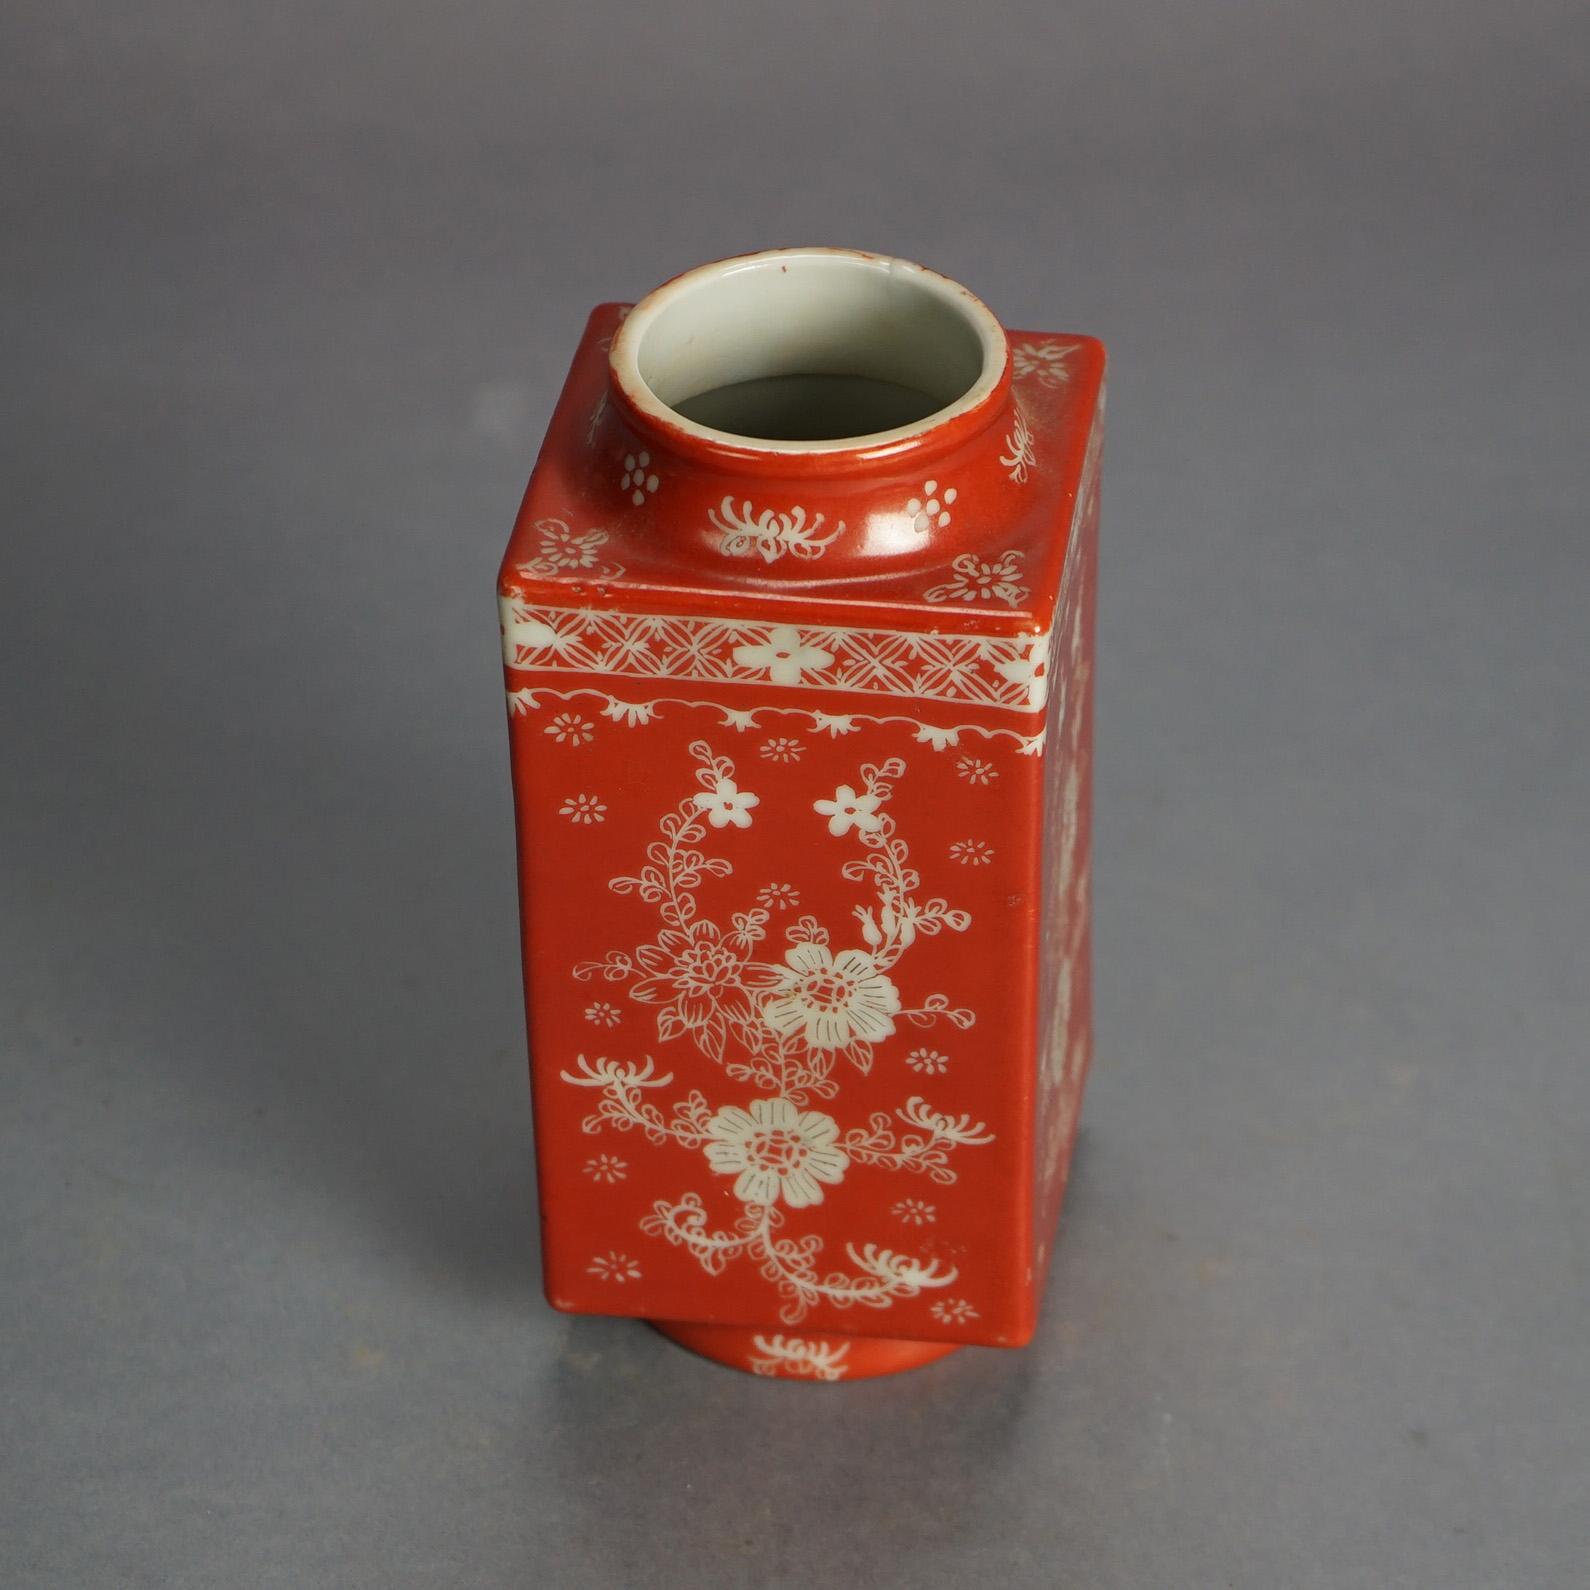 Antike chinesische Porzellanvase, orange, mit Blumenmuster, um 1920

Maße - 7,25 